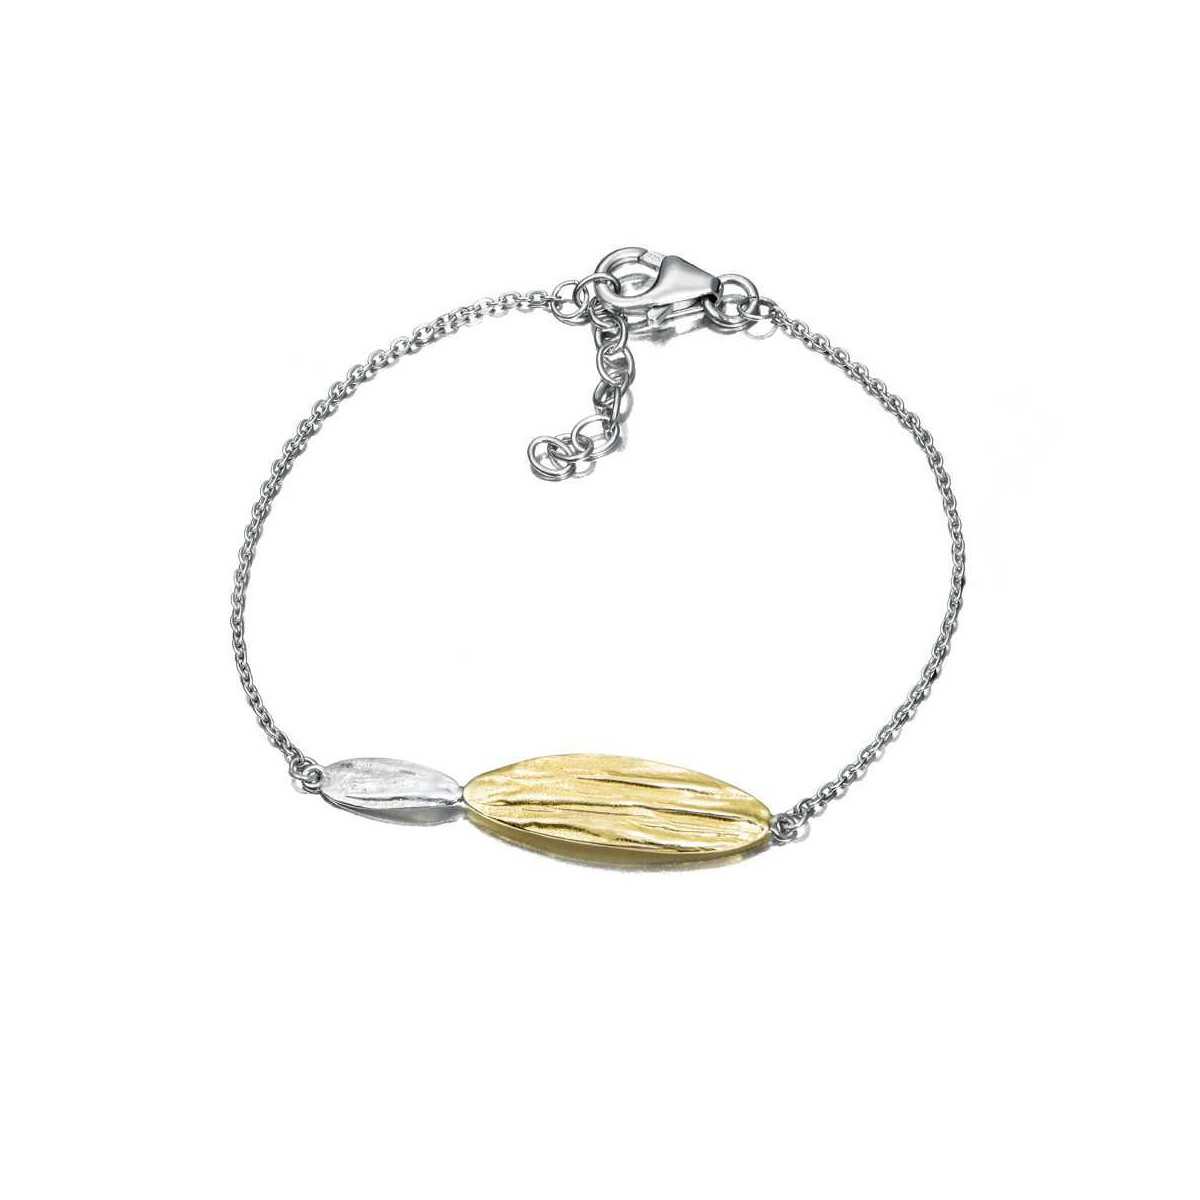 ARIZONA Bracelet in Silver. 18k Gold Vermeil